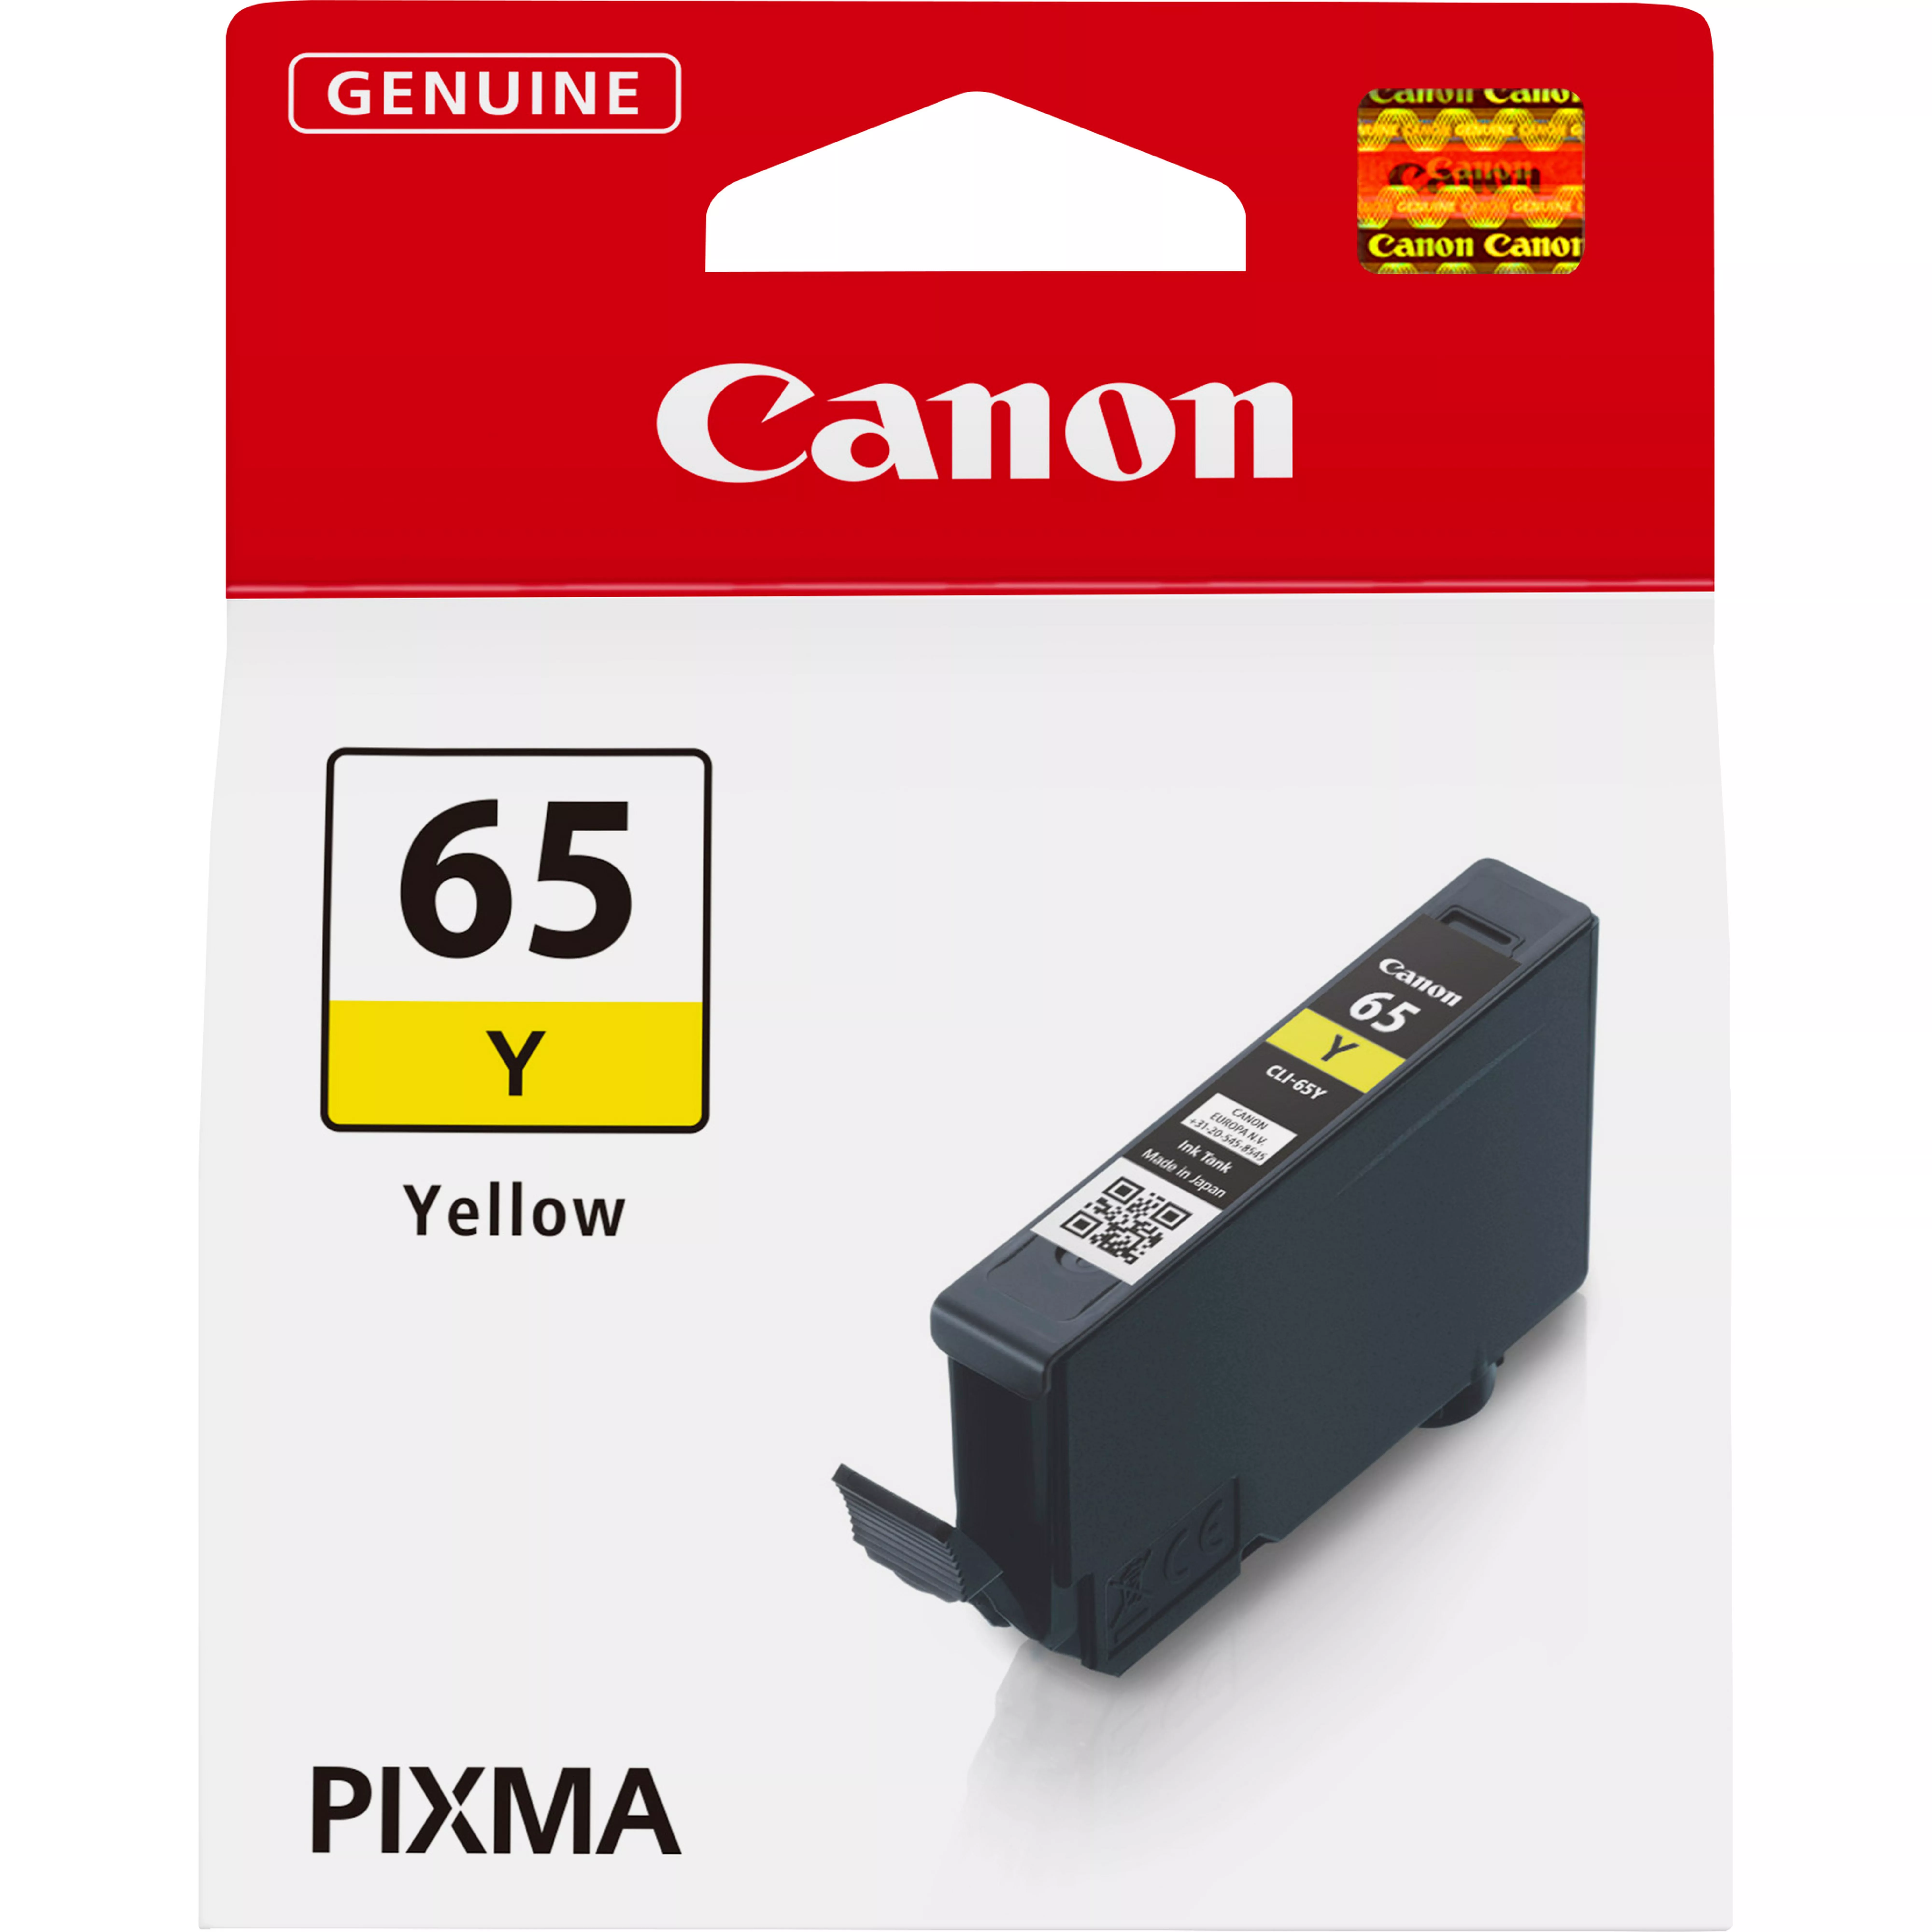 Achat CANON CLI-65 Y EUR/OCN Ink Cartridge au meilleur prix